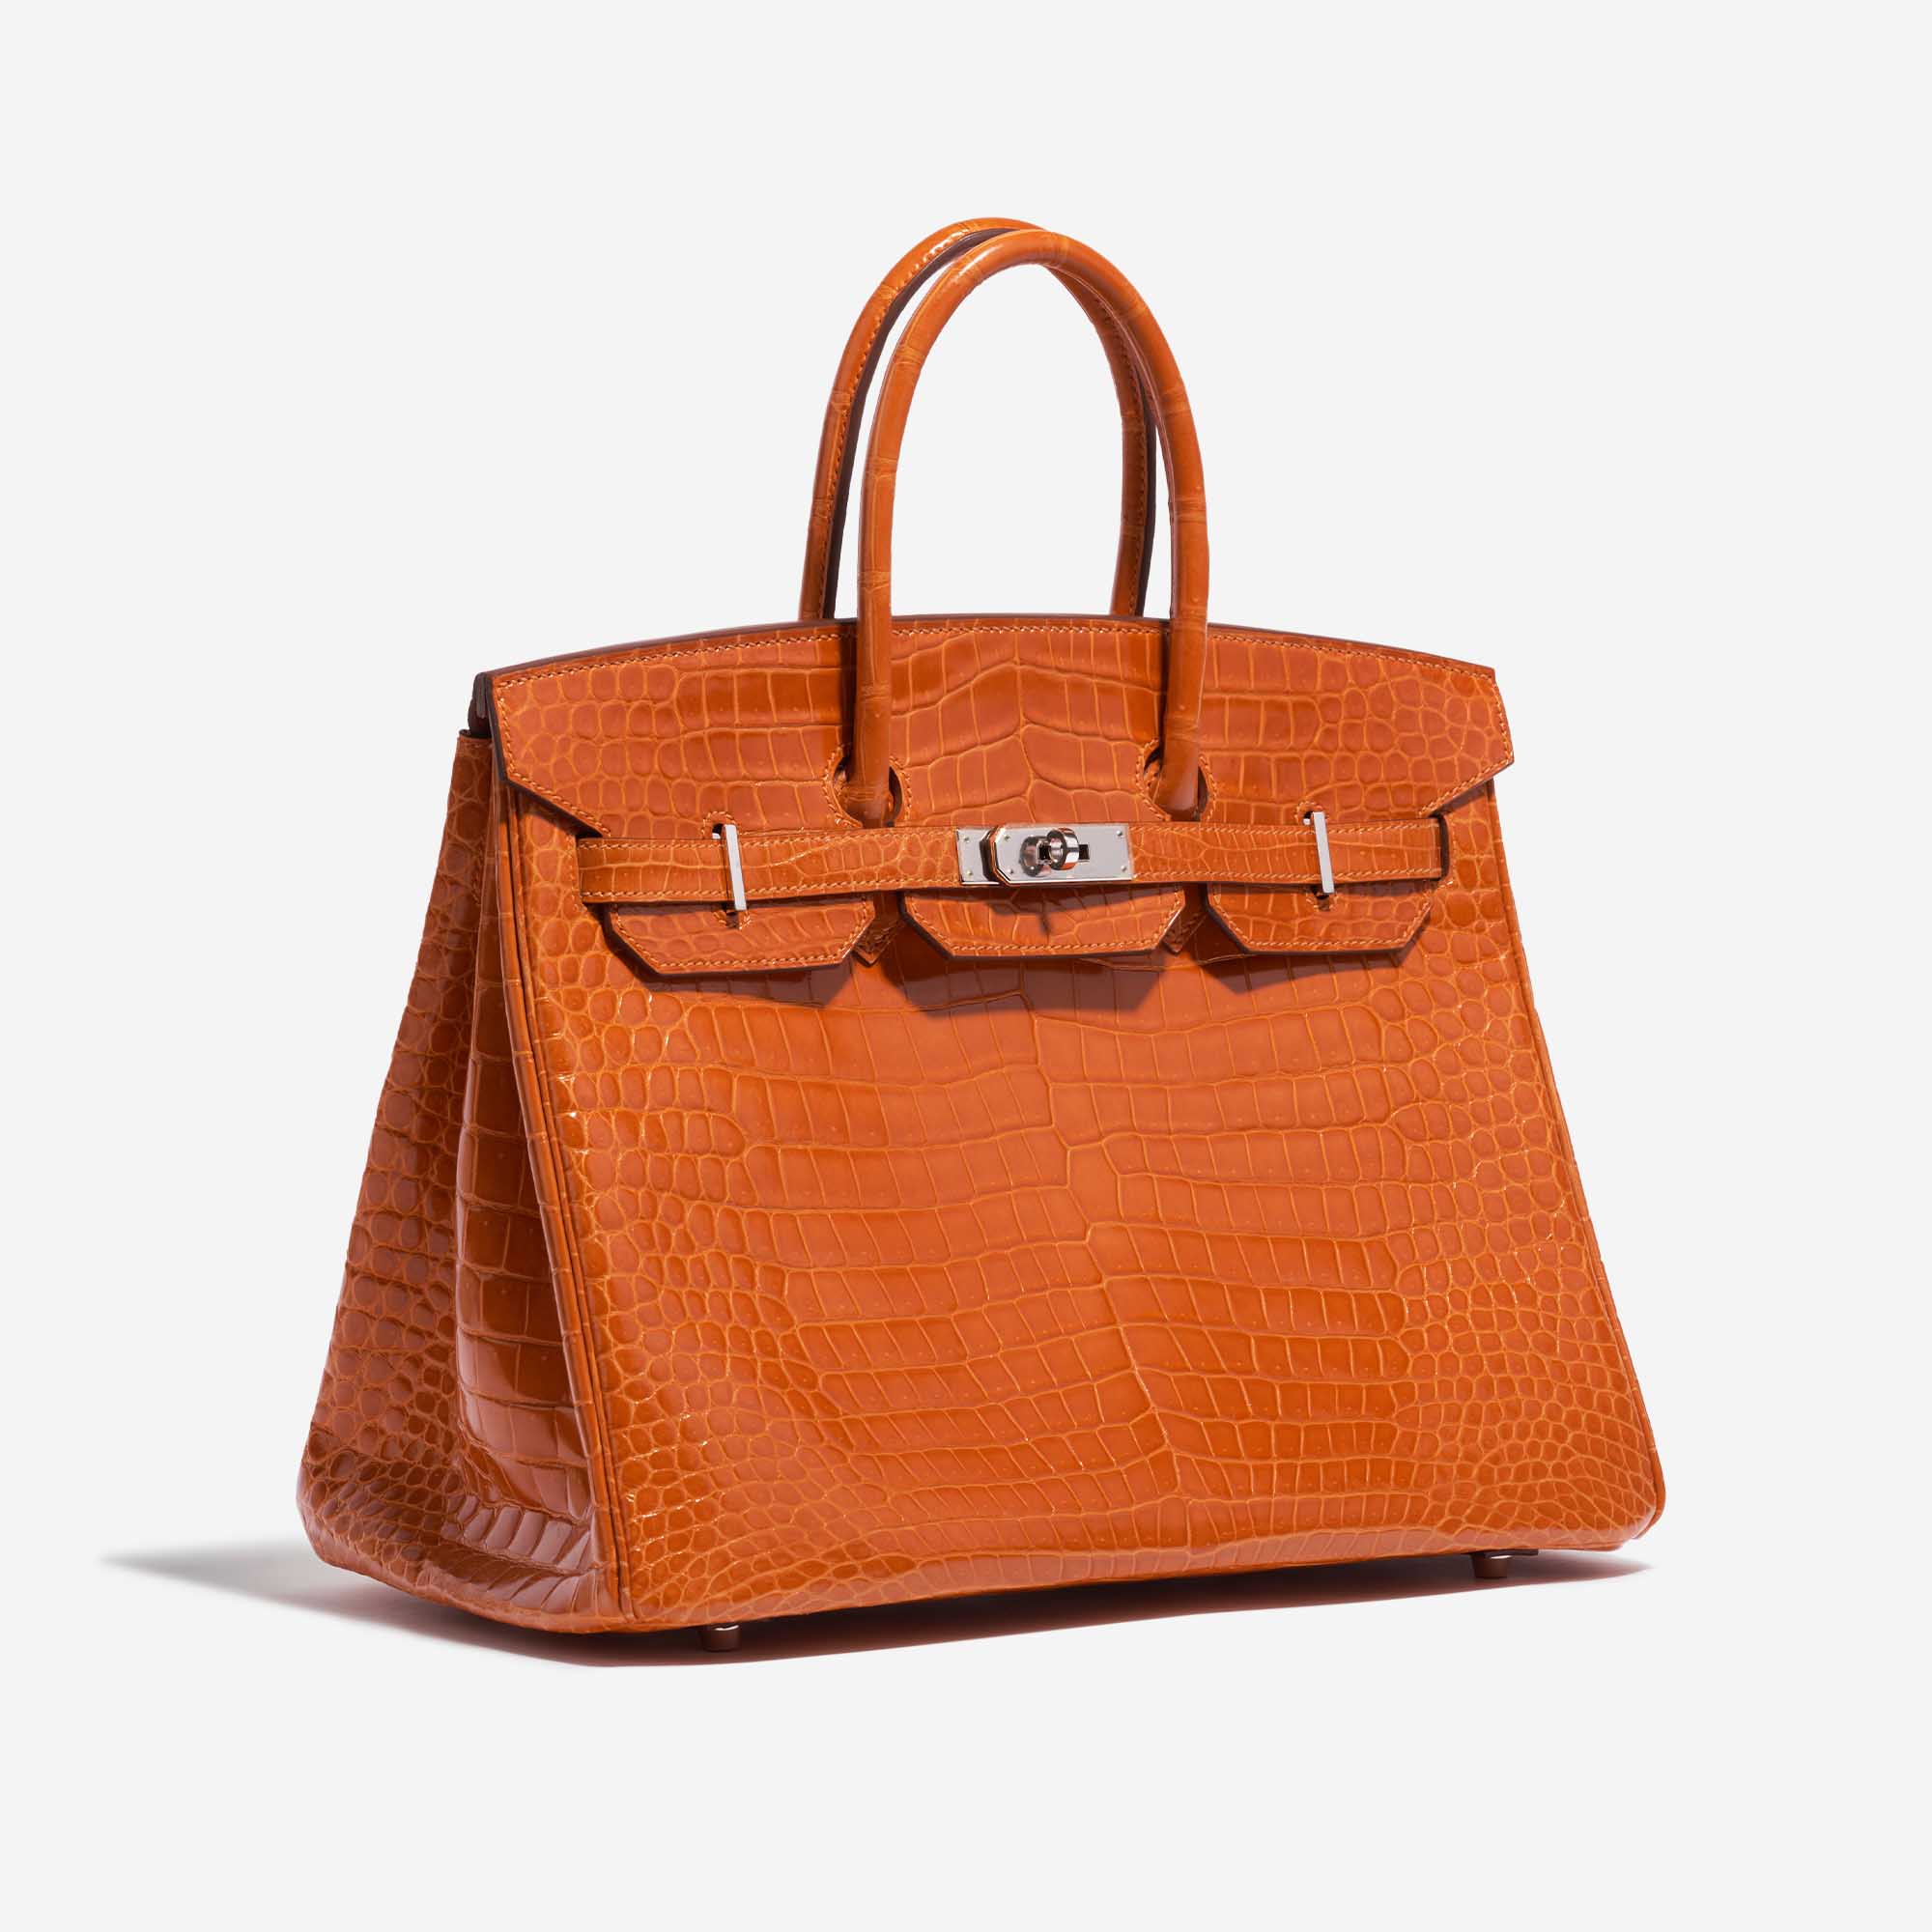 Pre-owned Hermès Tasche Birkin 35 Porosus Crocodile Pain d'épice Orange Side Front | Verkaufen Sie Ihre Designer-Tasche auf Saclab.com